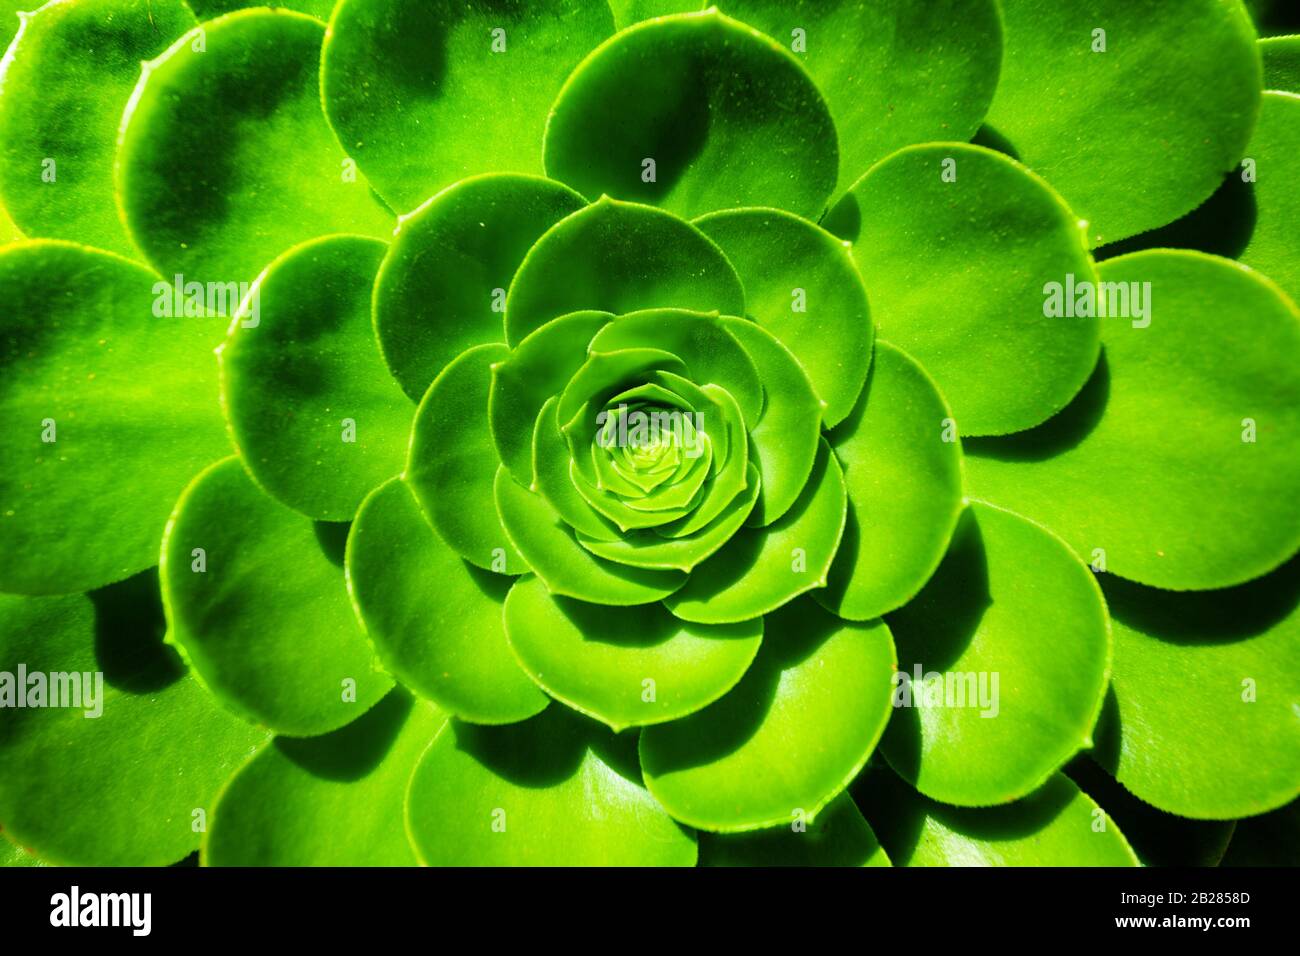 Aeonium arboreum Succulent plant close-up green flower from California, USA Stock Photo